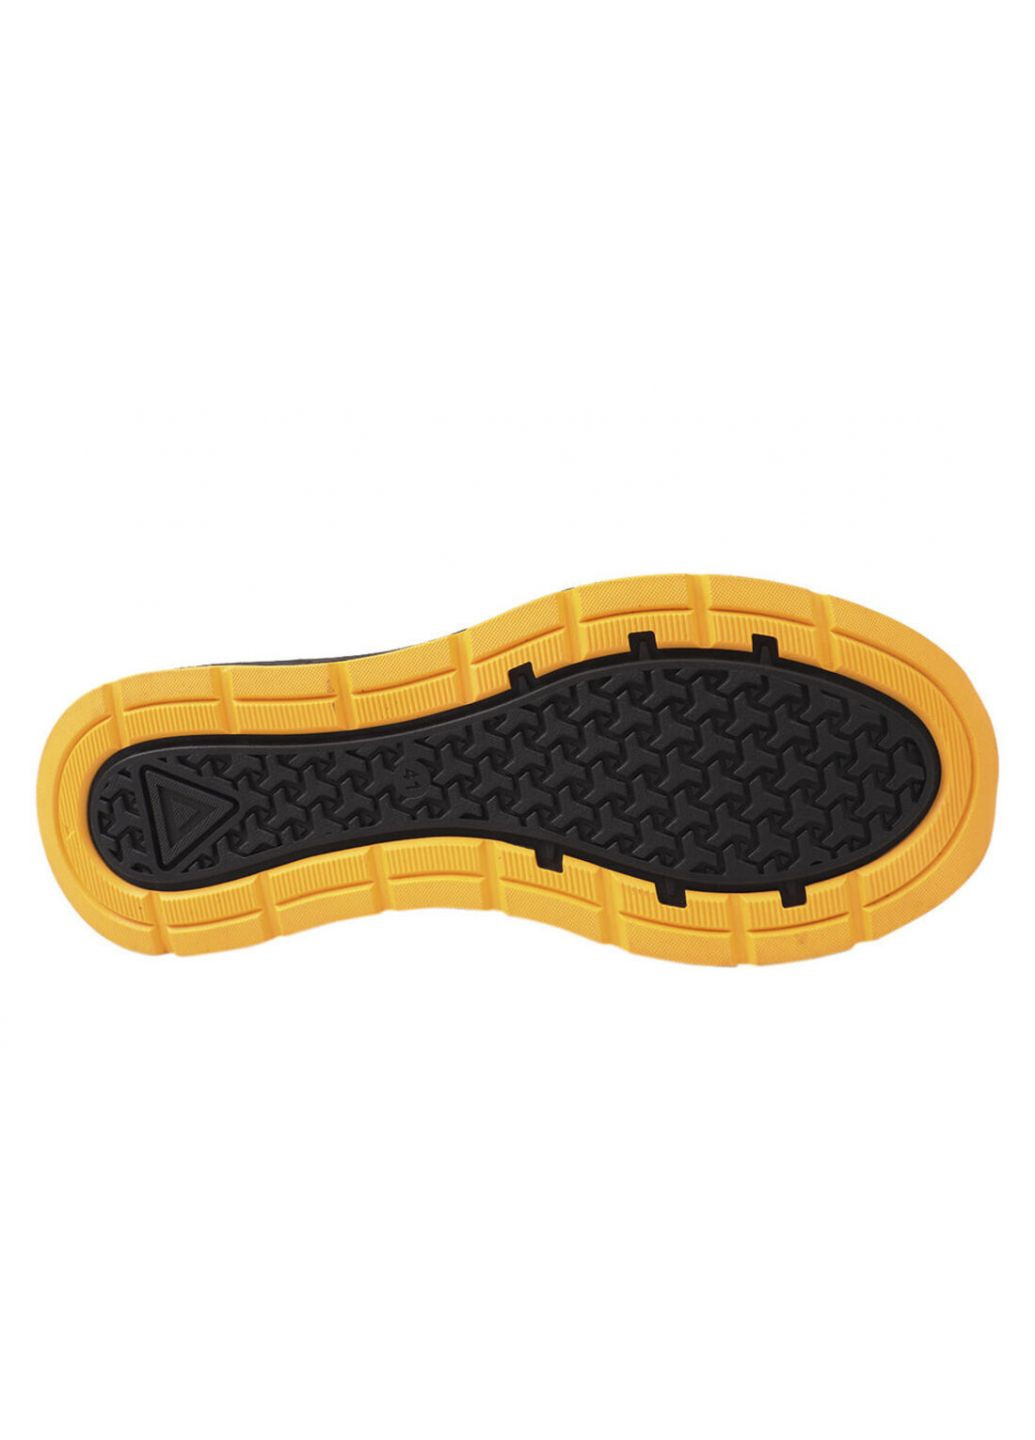 Черные кроссовки мужские из натуральной кожи, на низком ходу, на шнуровке, черные, украина Brave 186-21/22DTS